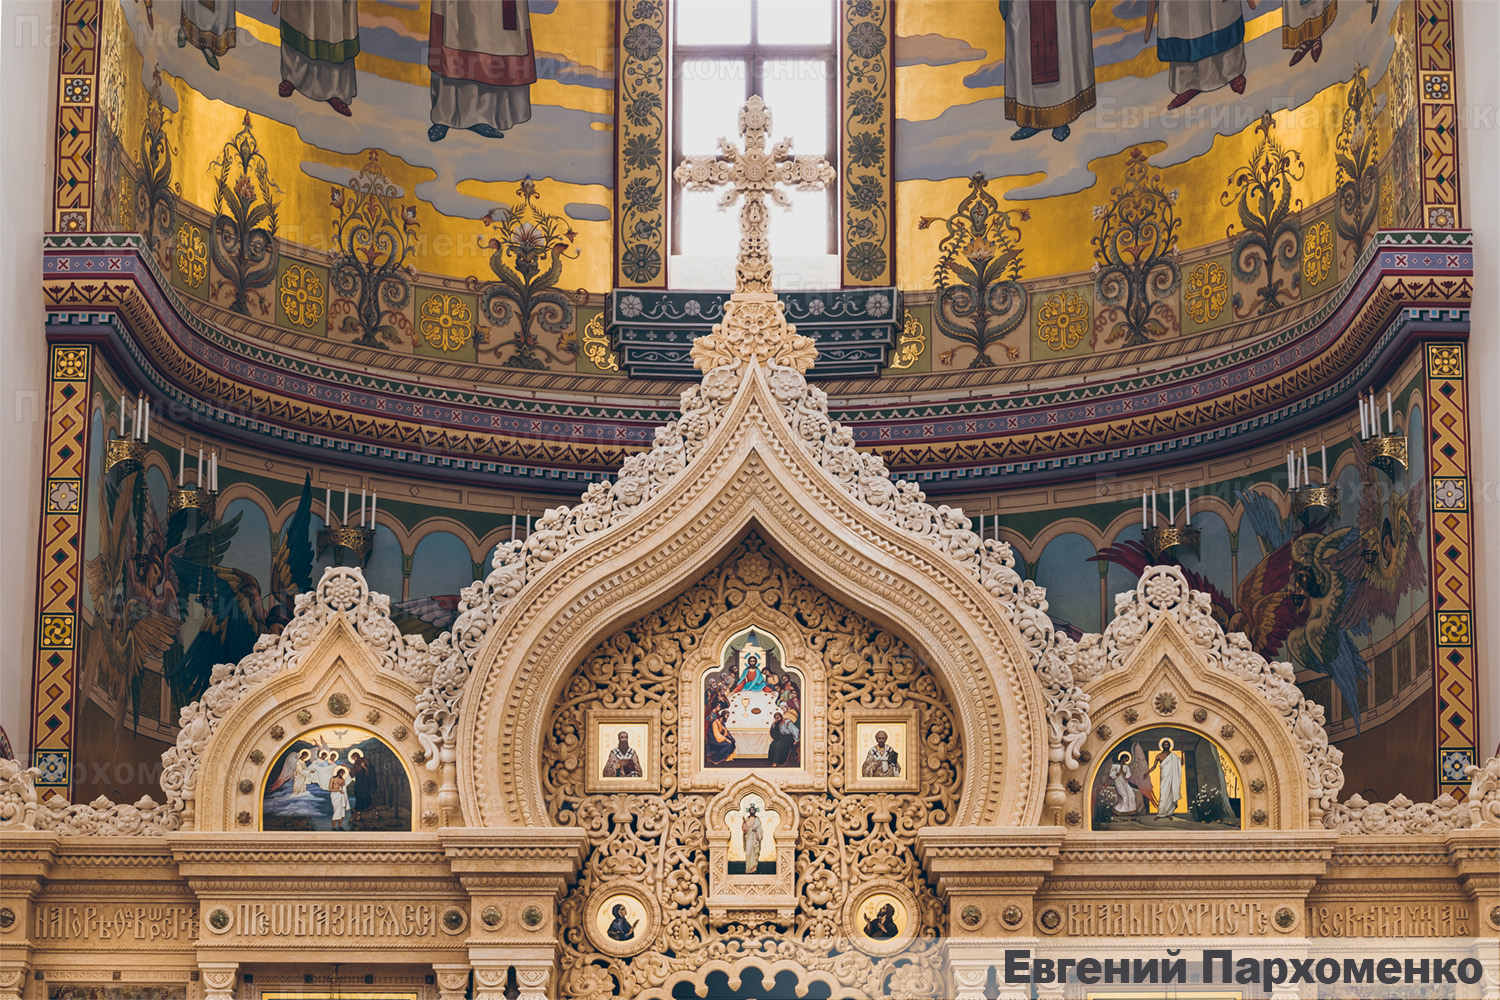 Иконостас с ажурной резьбой по золотистому мрамору для Спасо-Преображенского собора